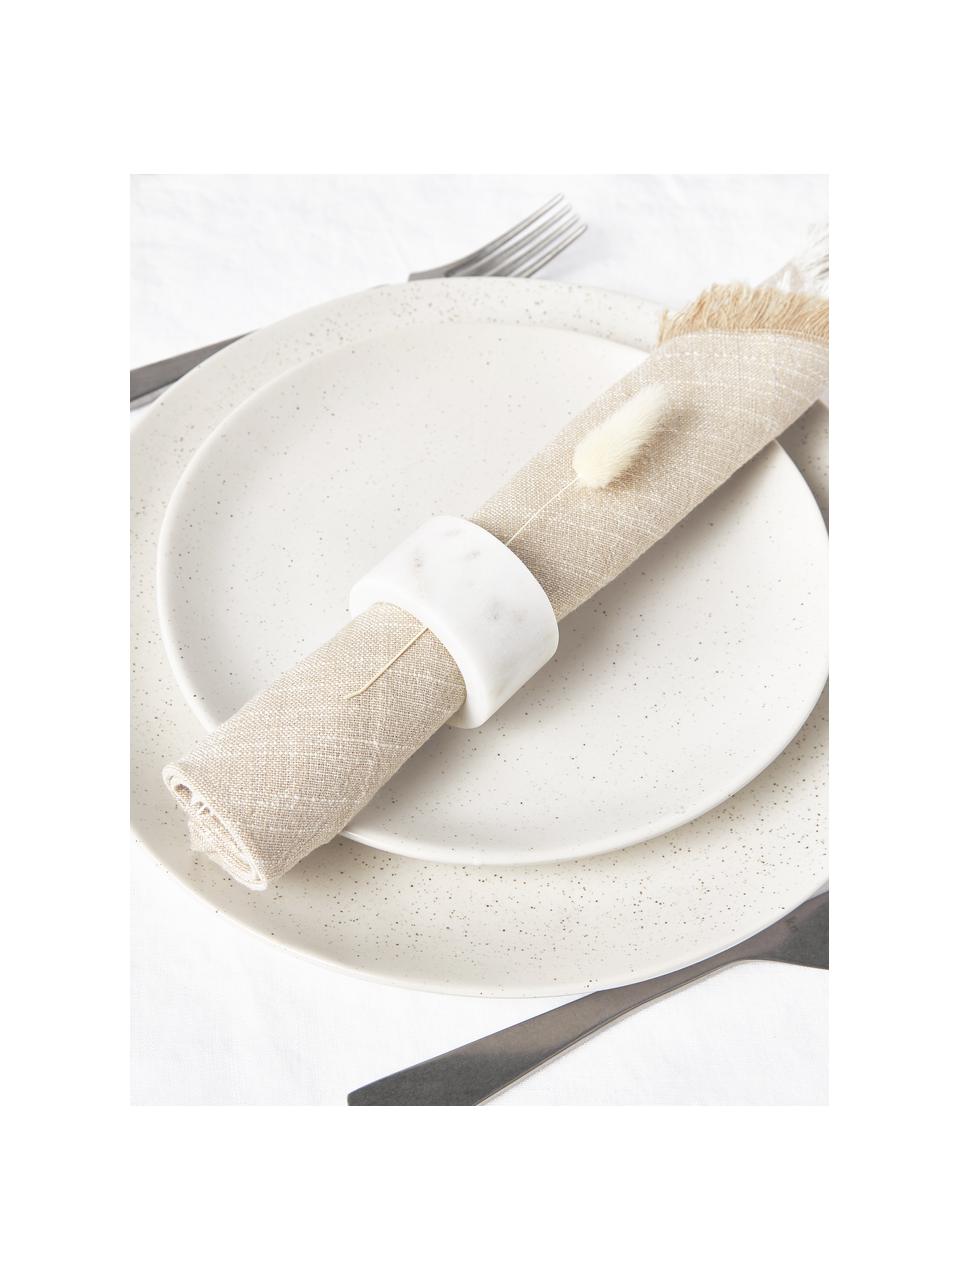 Stoffen servetten Ivory met franjes, 4 stuks, 100% katoen, Beige, B 40 x L 40 cm